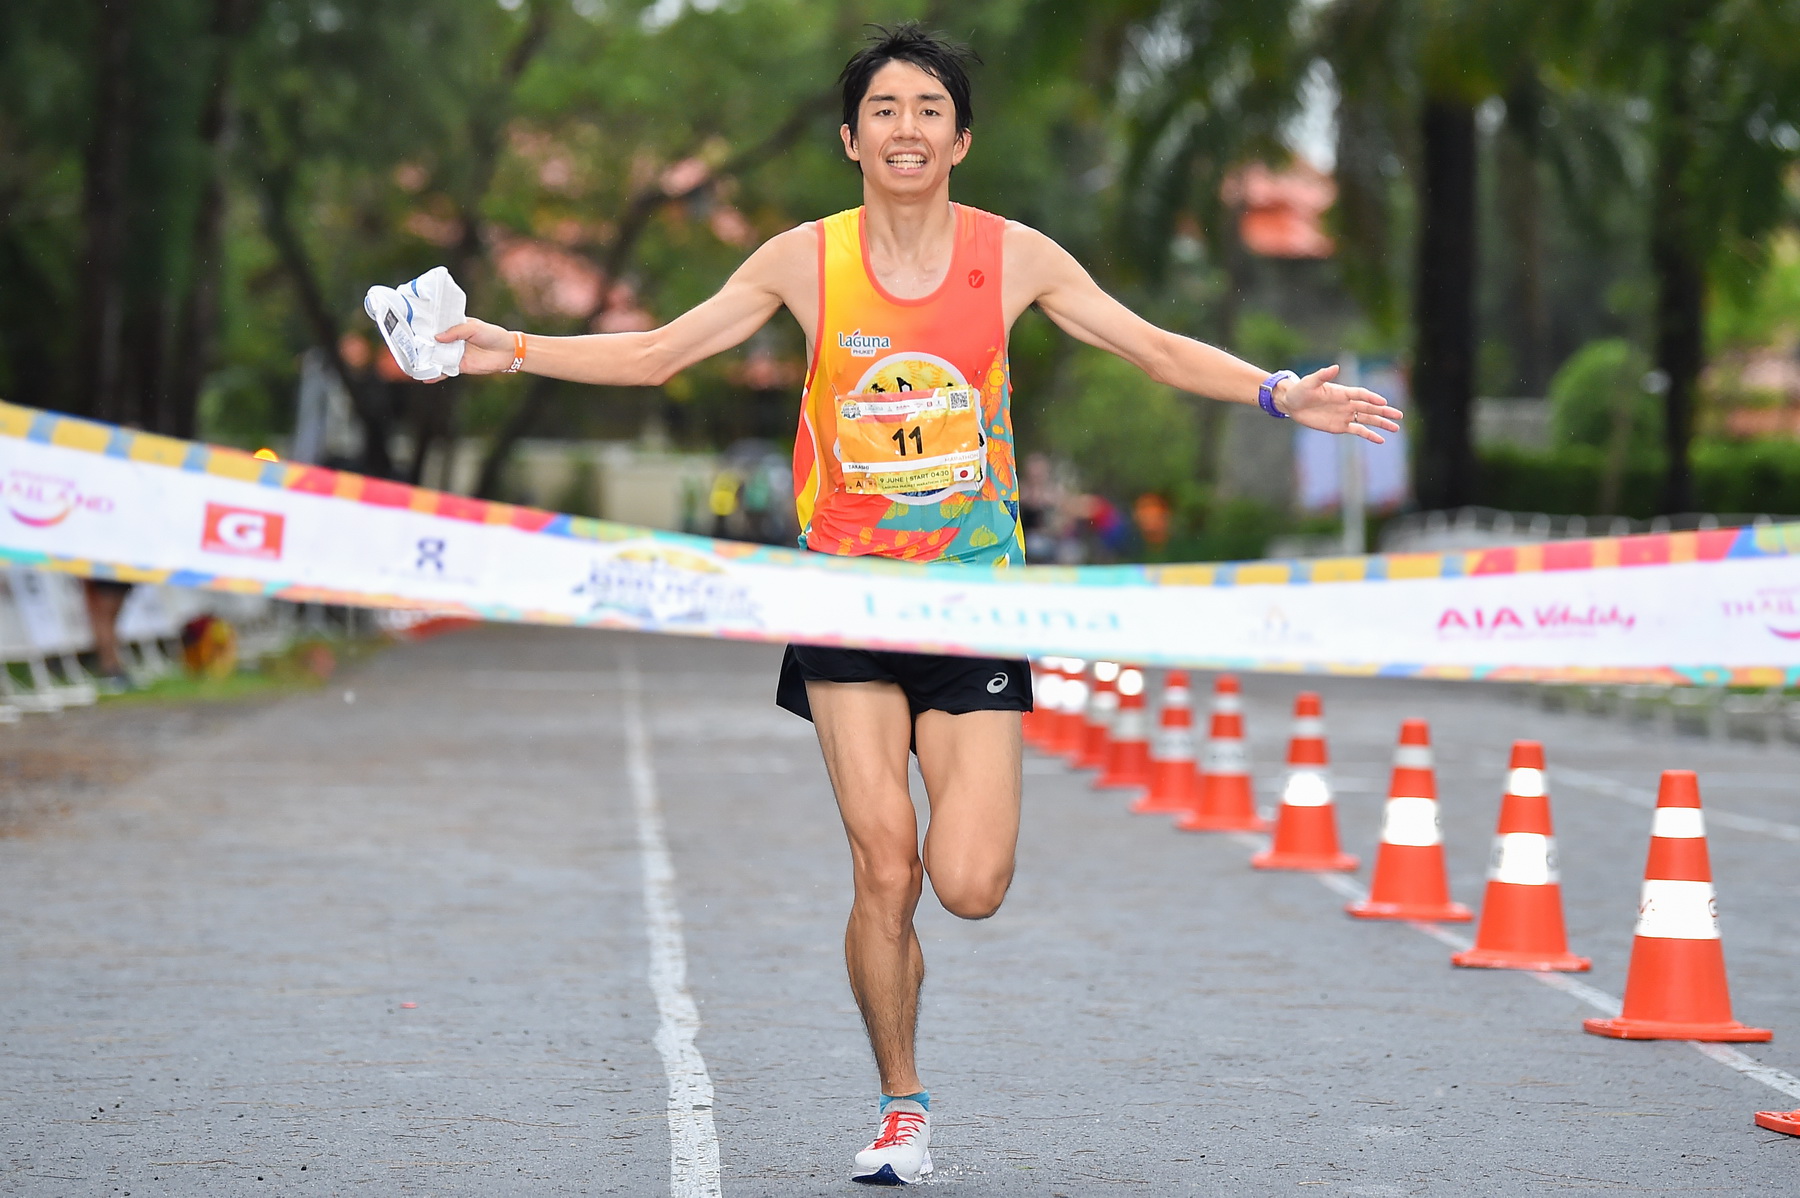 นักวิ่งกว่า 73 ประเทศทั่วโลกร่วมวิ่งมาราธอน ลากูน่า ภูเก็ต 2019 